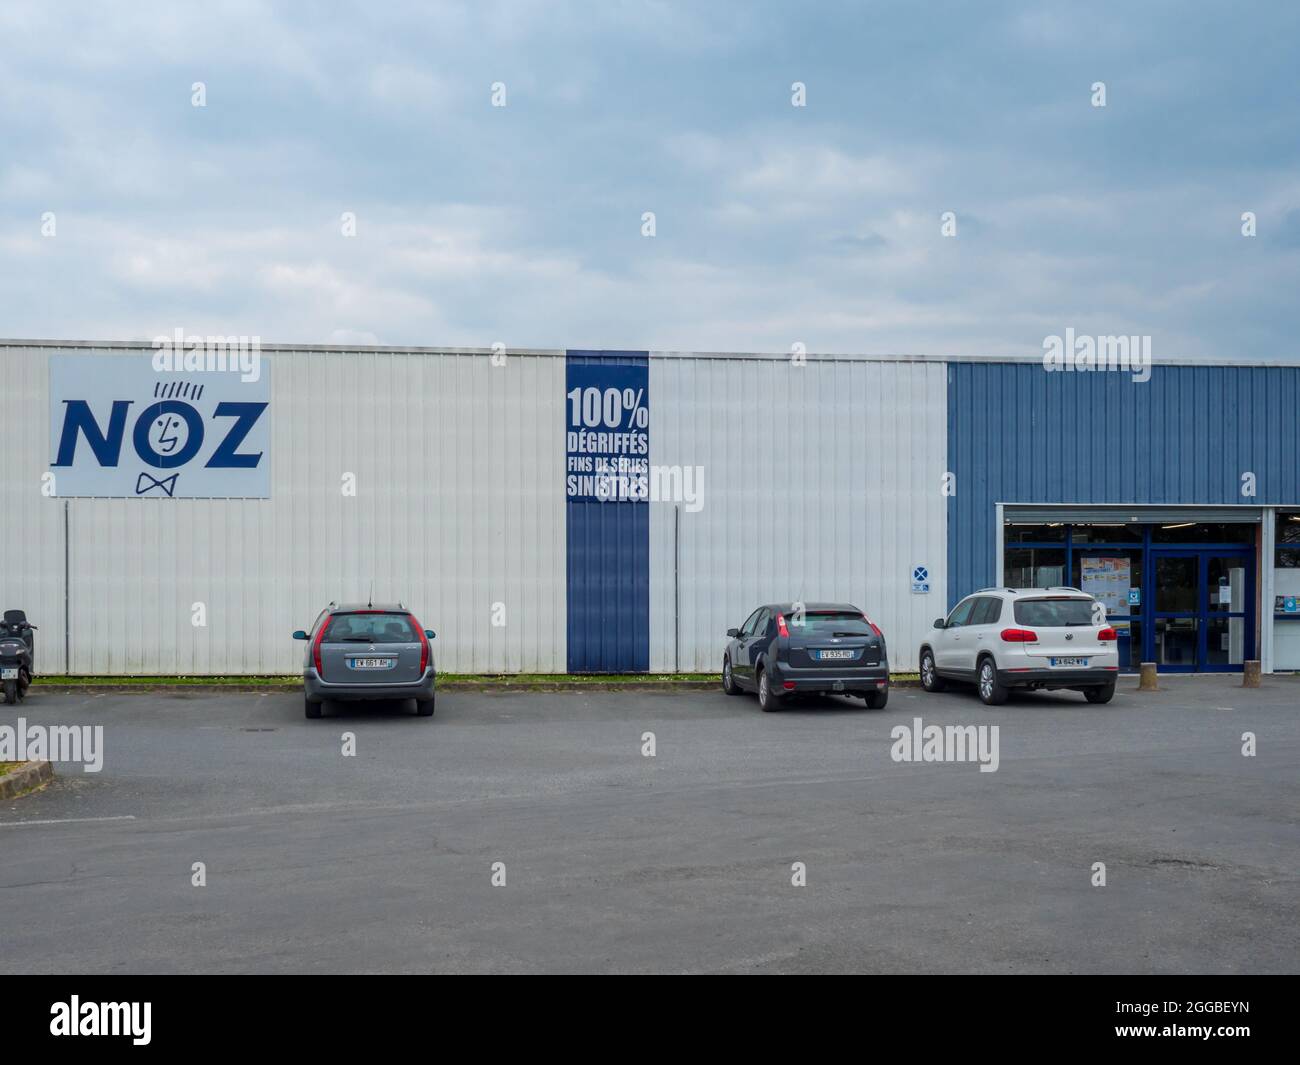 FLECHE, FRANCIA - 31 luglio 2021: Le automobili parcheggiate di fronte AL logo NOZ sulla vista frontale del negozio facciata del negozio francese Foto Stock